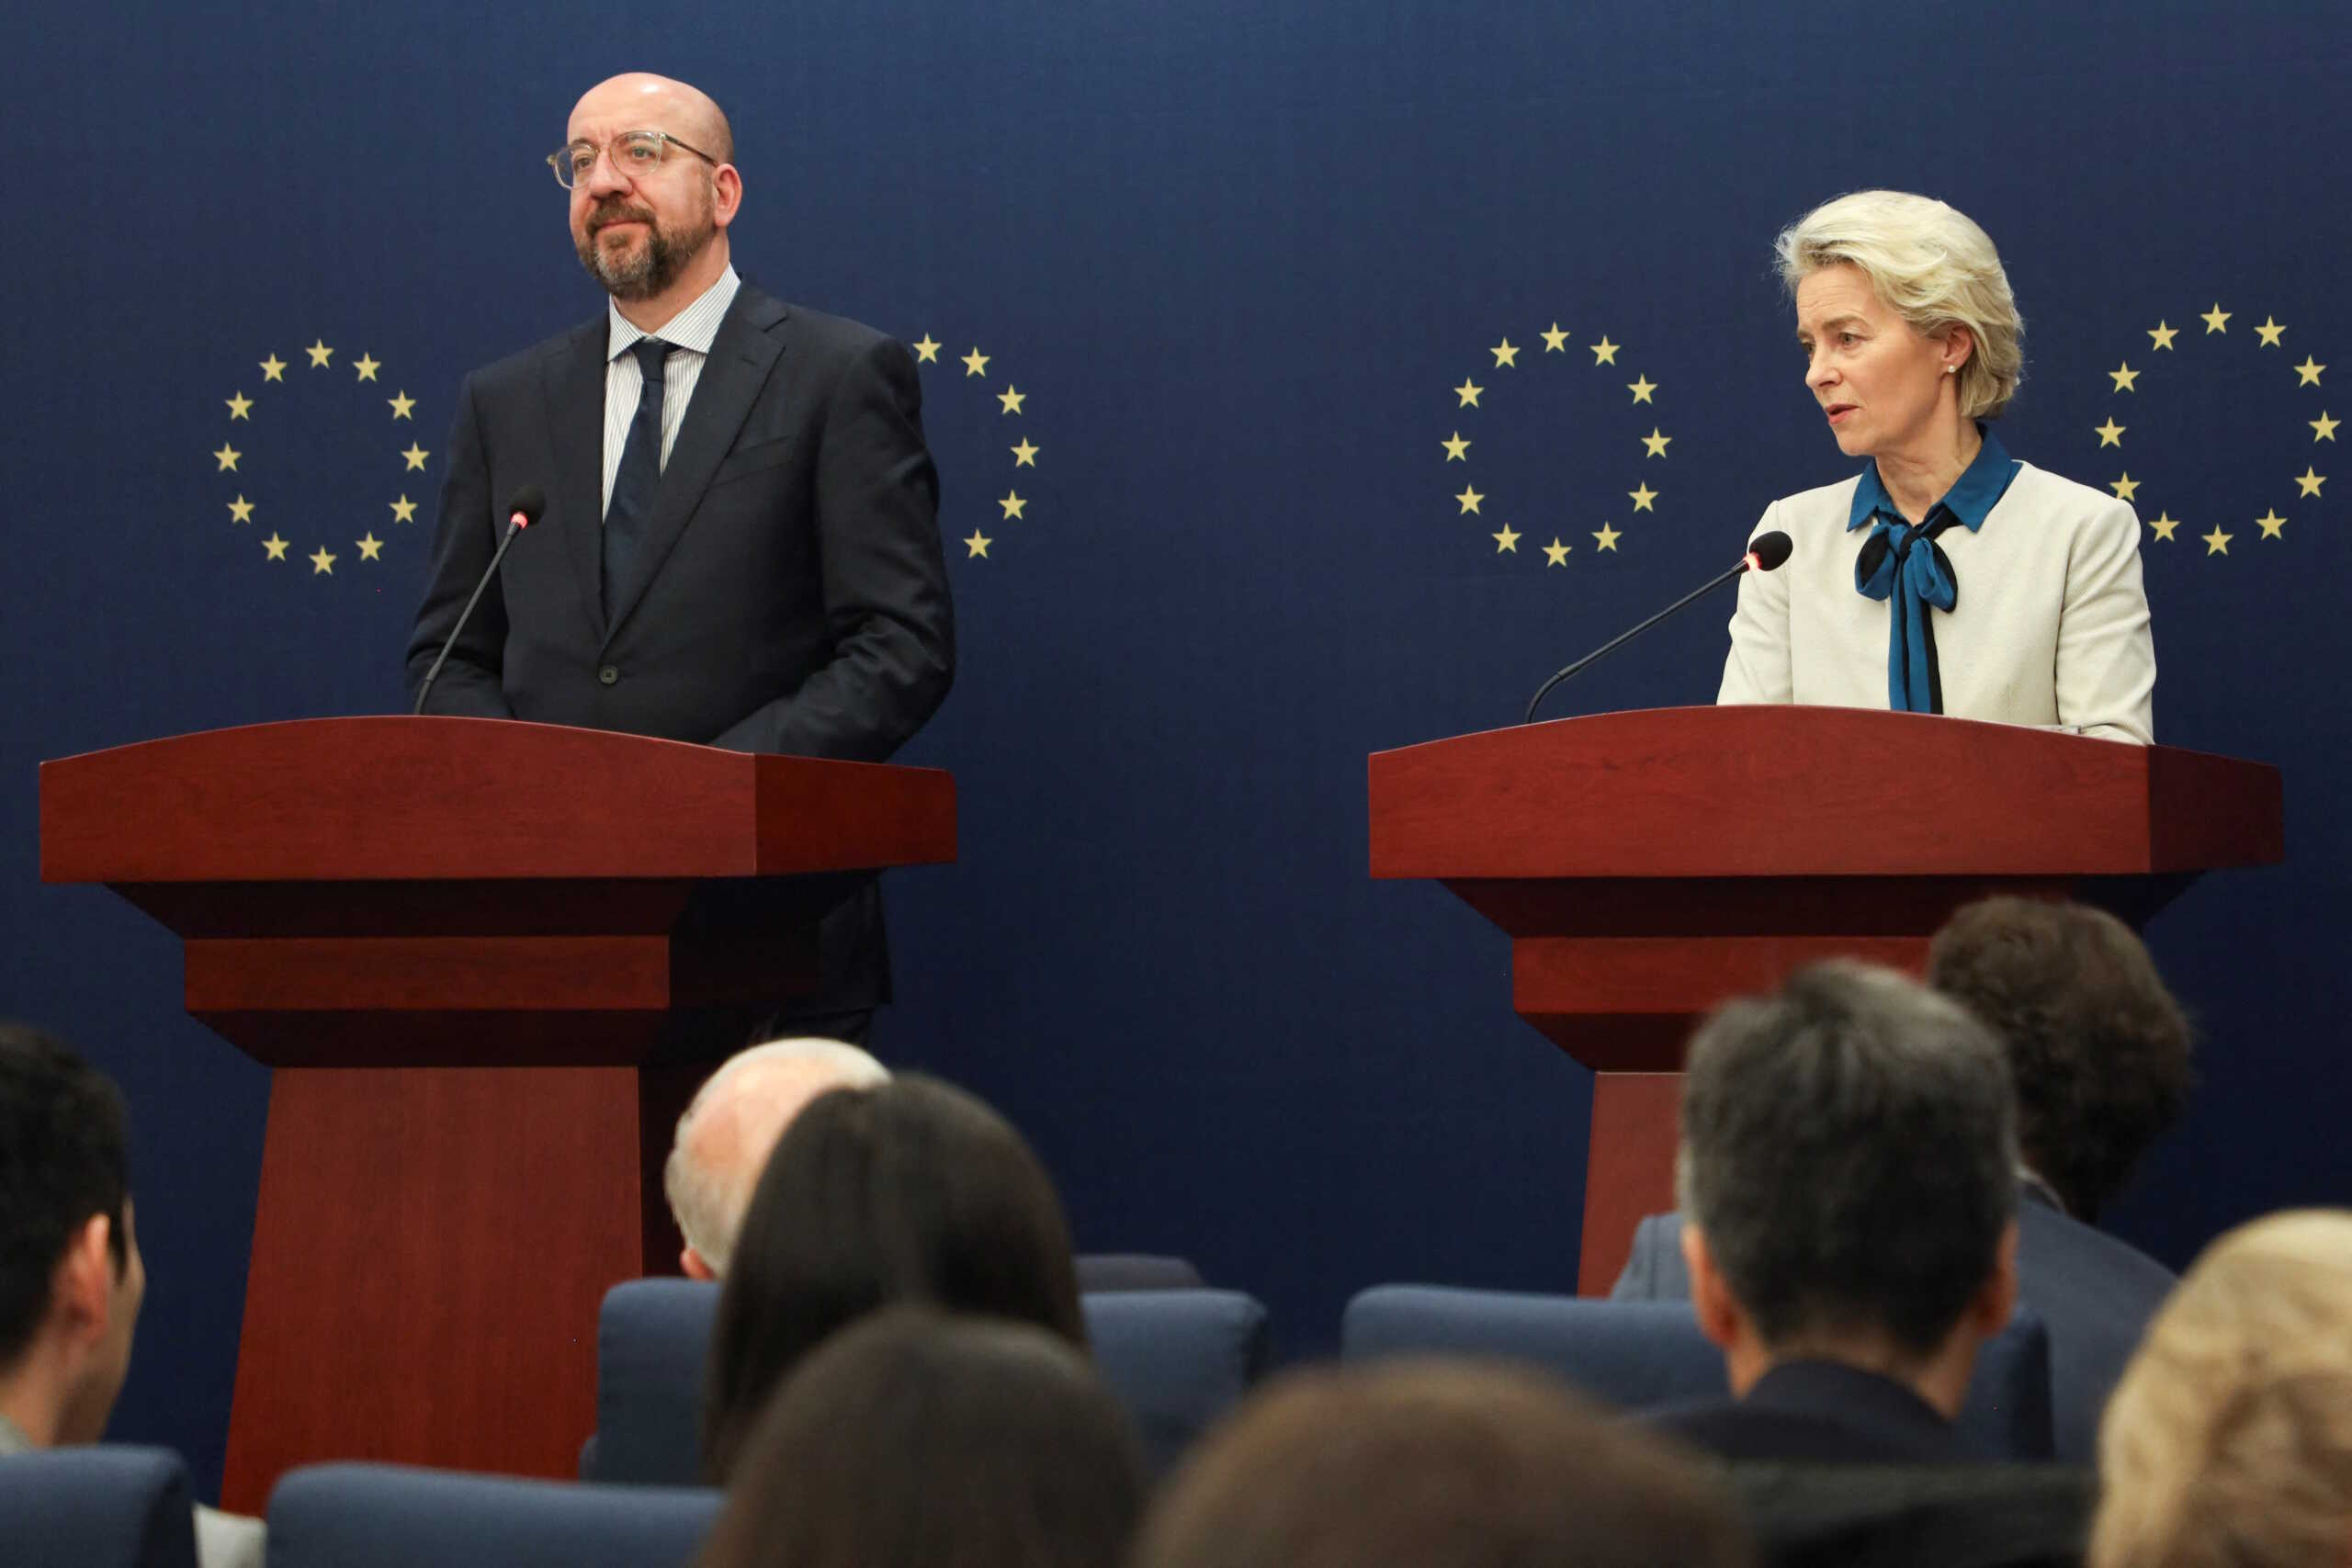 Σύνοδος Κορυφής ΕΕ: Οικονομία, Ουκρανία και Μέση Ανατολή στην ατζέντα – Προκλήσεις και συμβιβασμοί